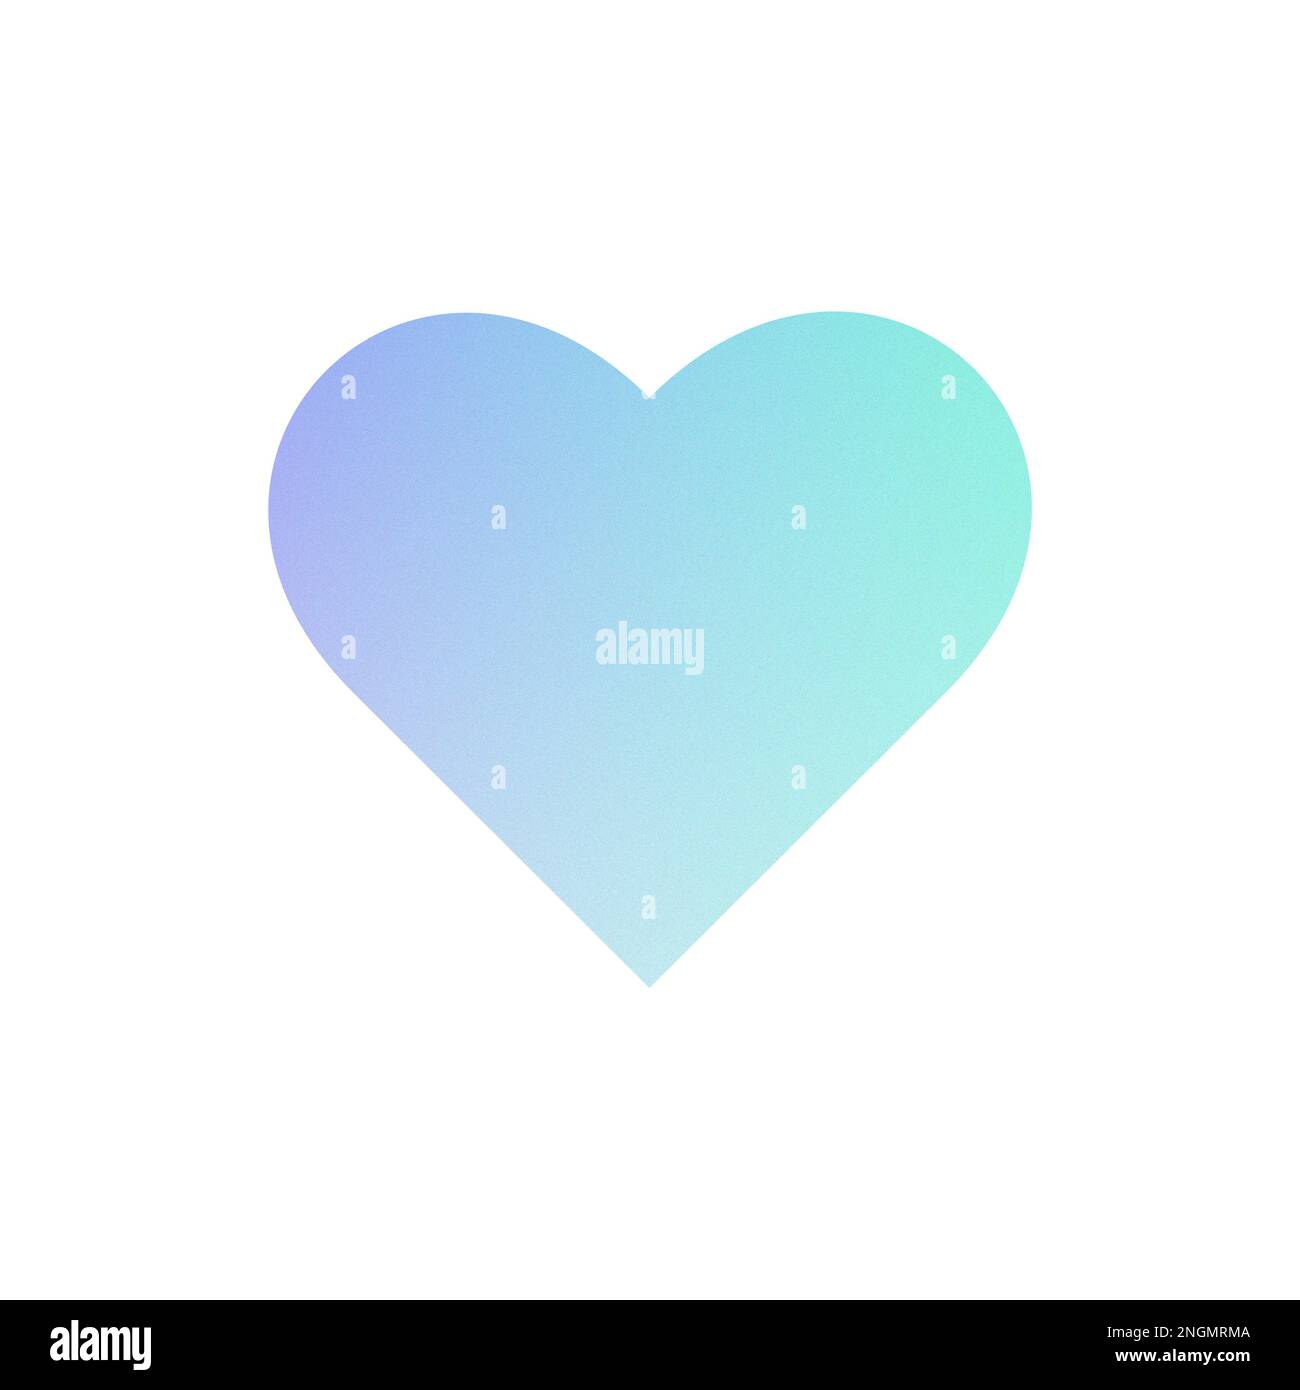 Illustrazione a cuore, colori pastello luminosi blu e turchese, grana, immagine, mattonelle, scheda Foto Stock